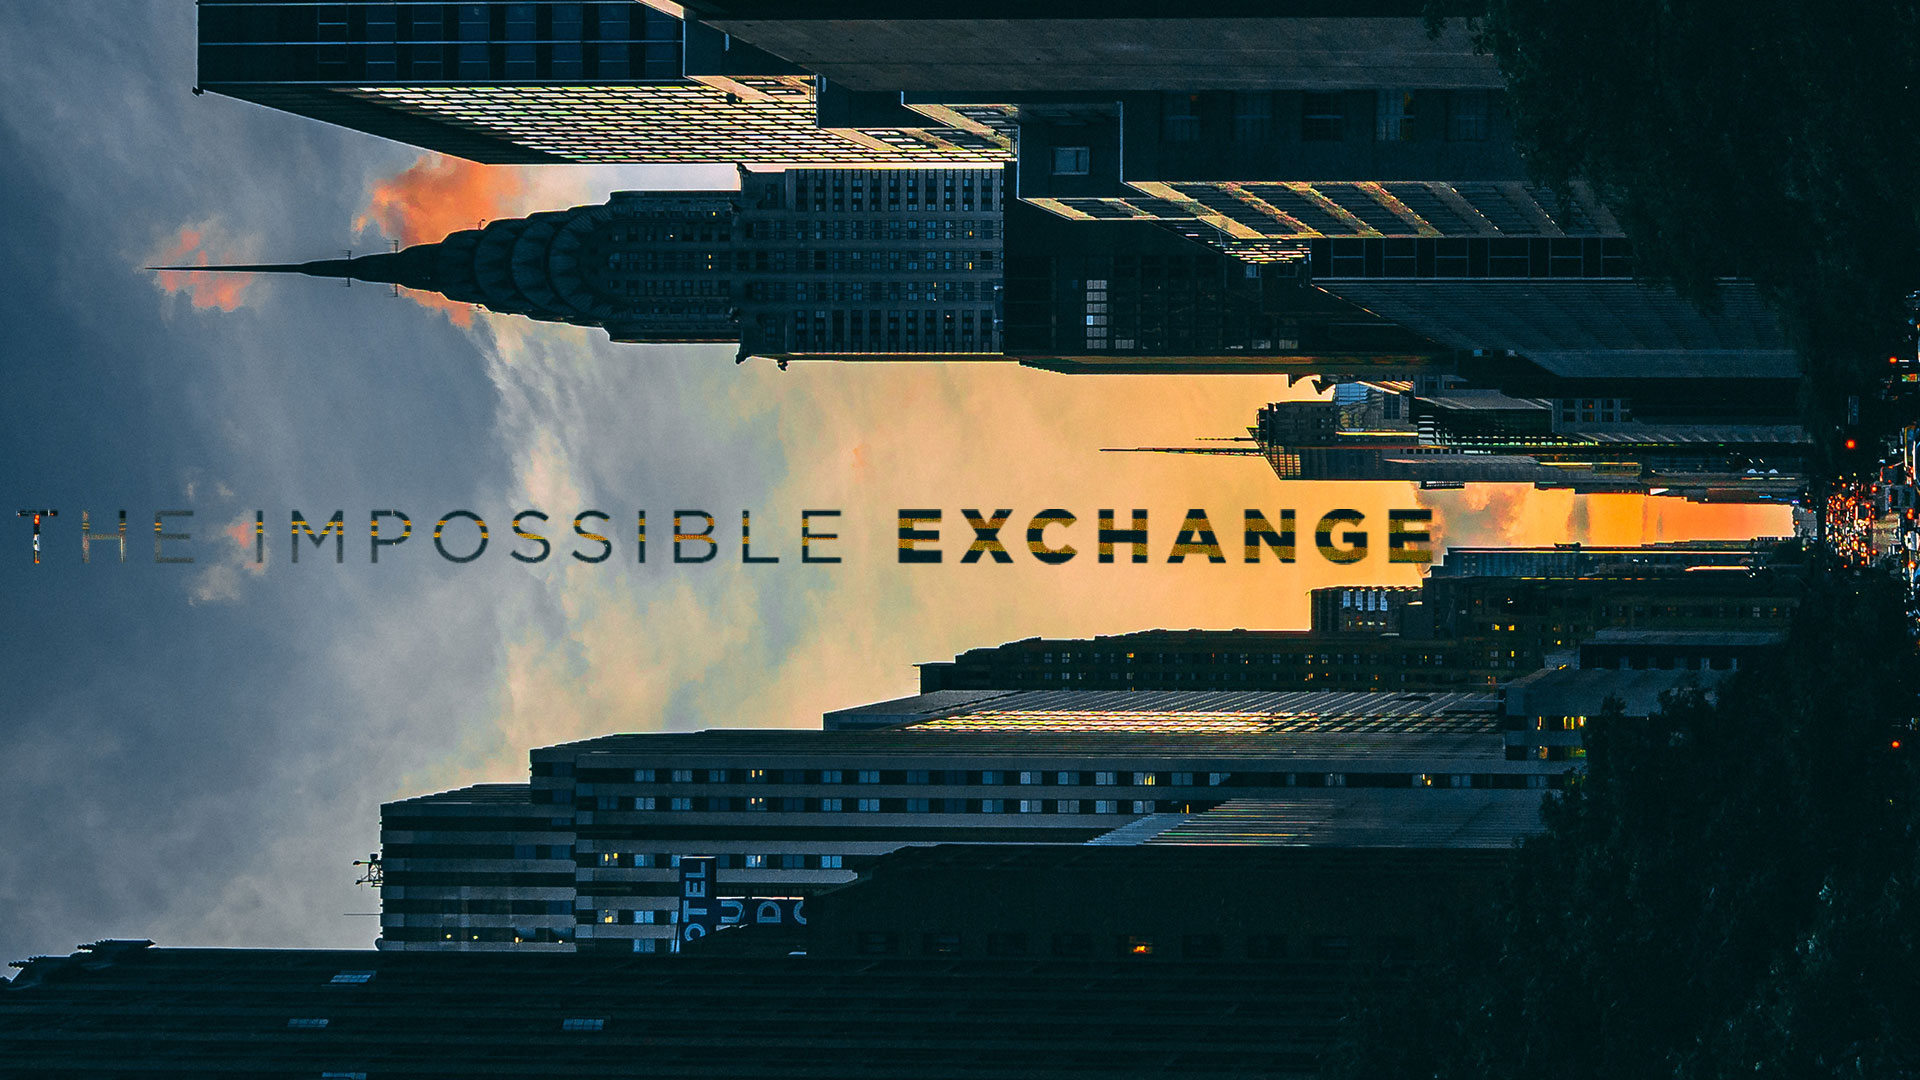 The Impossible Exchange - Ps. Jurgen Matthesius